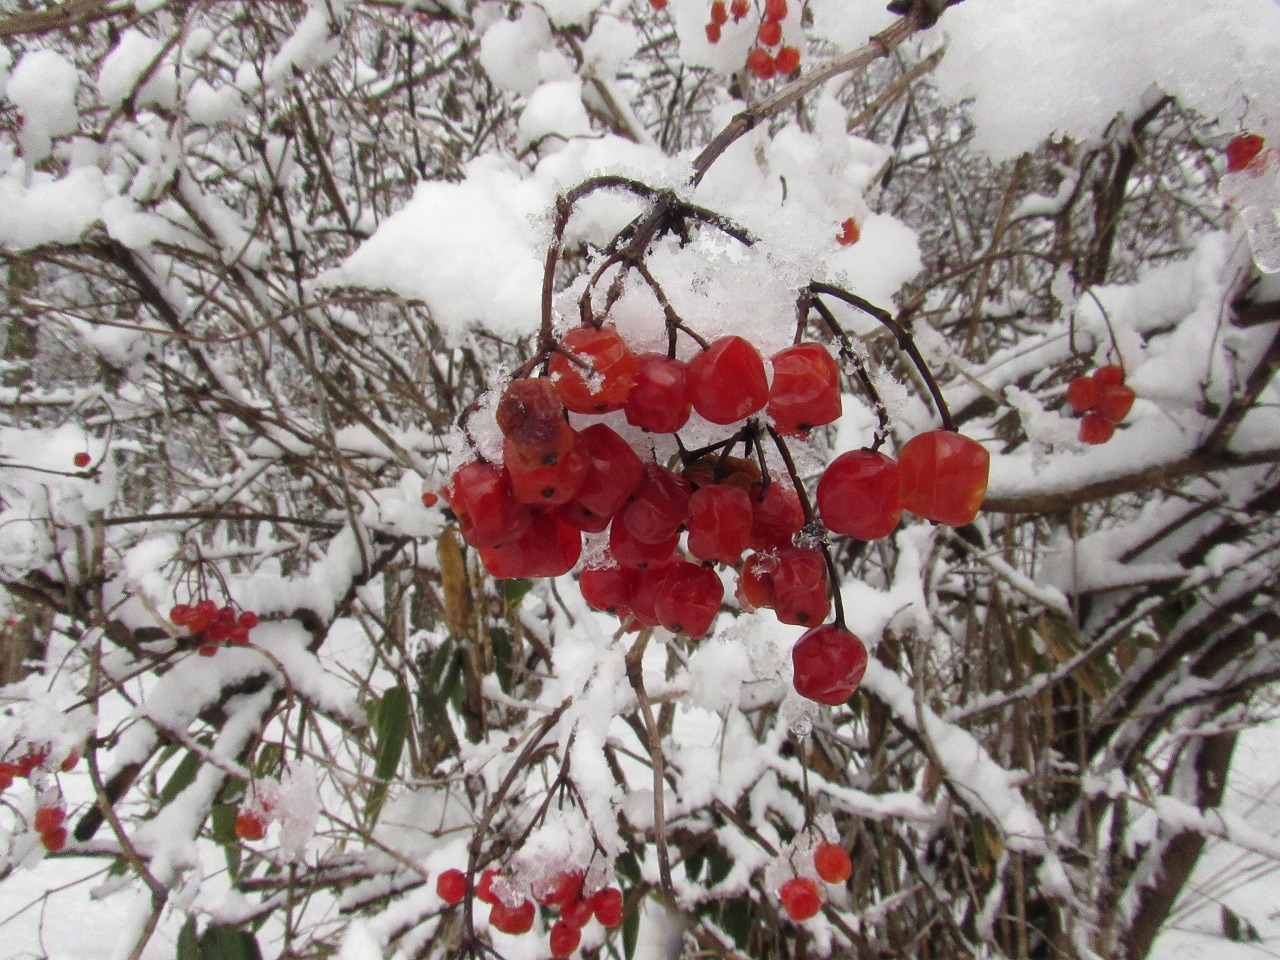 雪の中で赤い実を見つけたよ 日野振興センター日野振興局 とりネット 鳥取県公式サイト